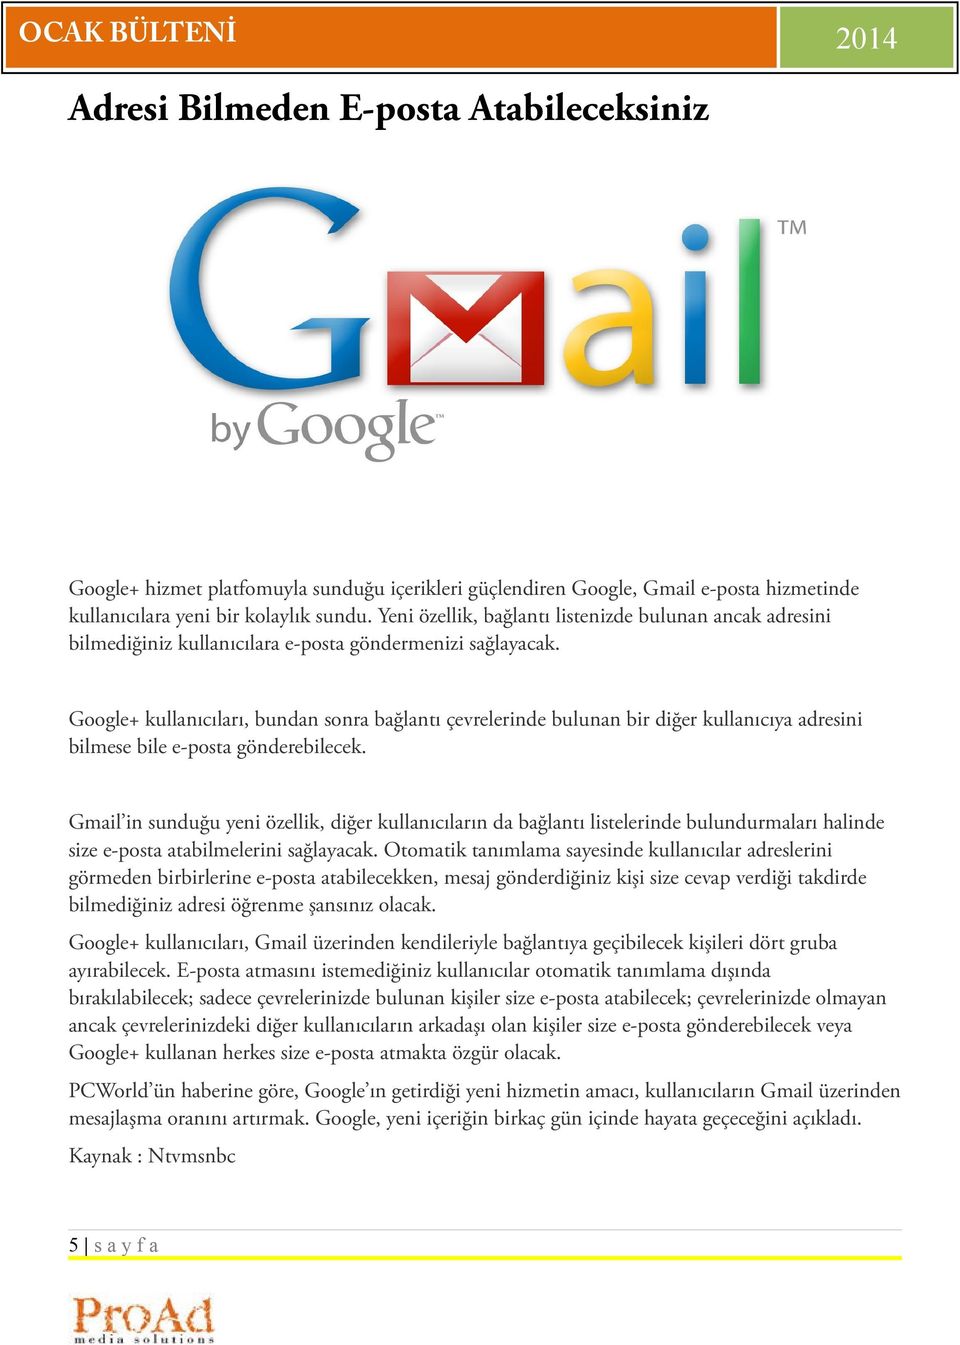 Google+ kullanıcıları, bundan sonra bağlantı çevrelerinde bulunan bir diğer kullanıcıya adresini bilmese bile e-posta gönderebilecek.